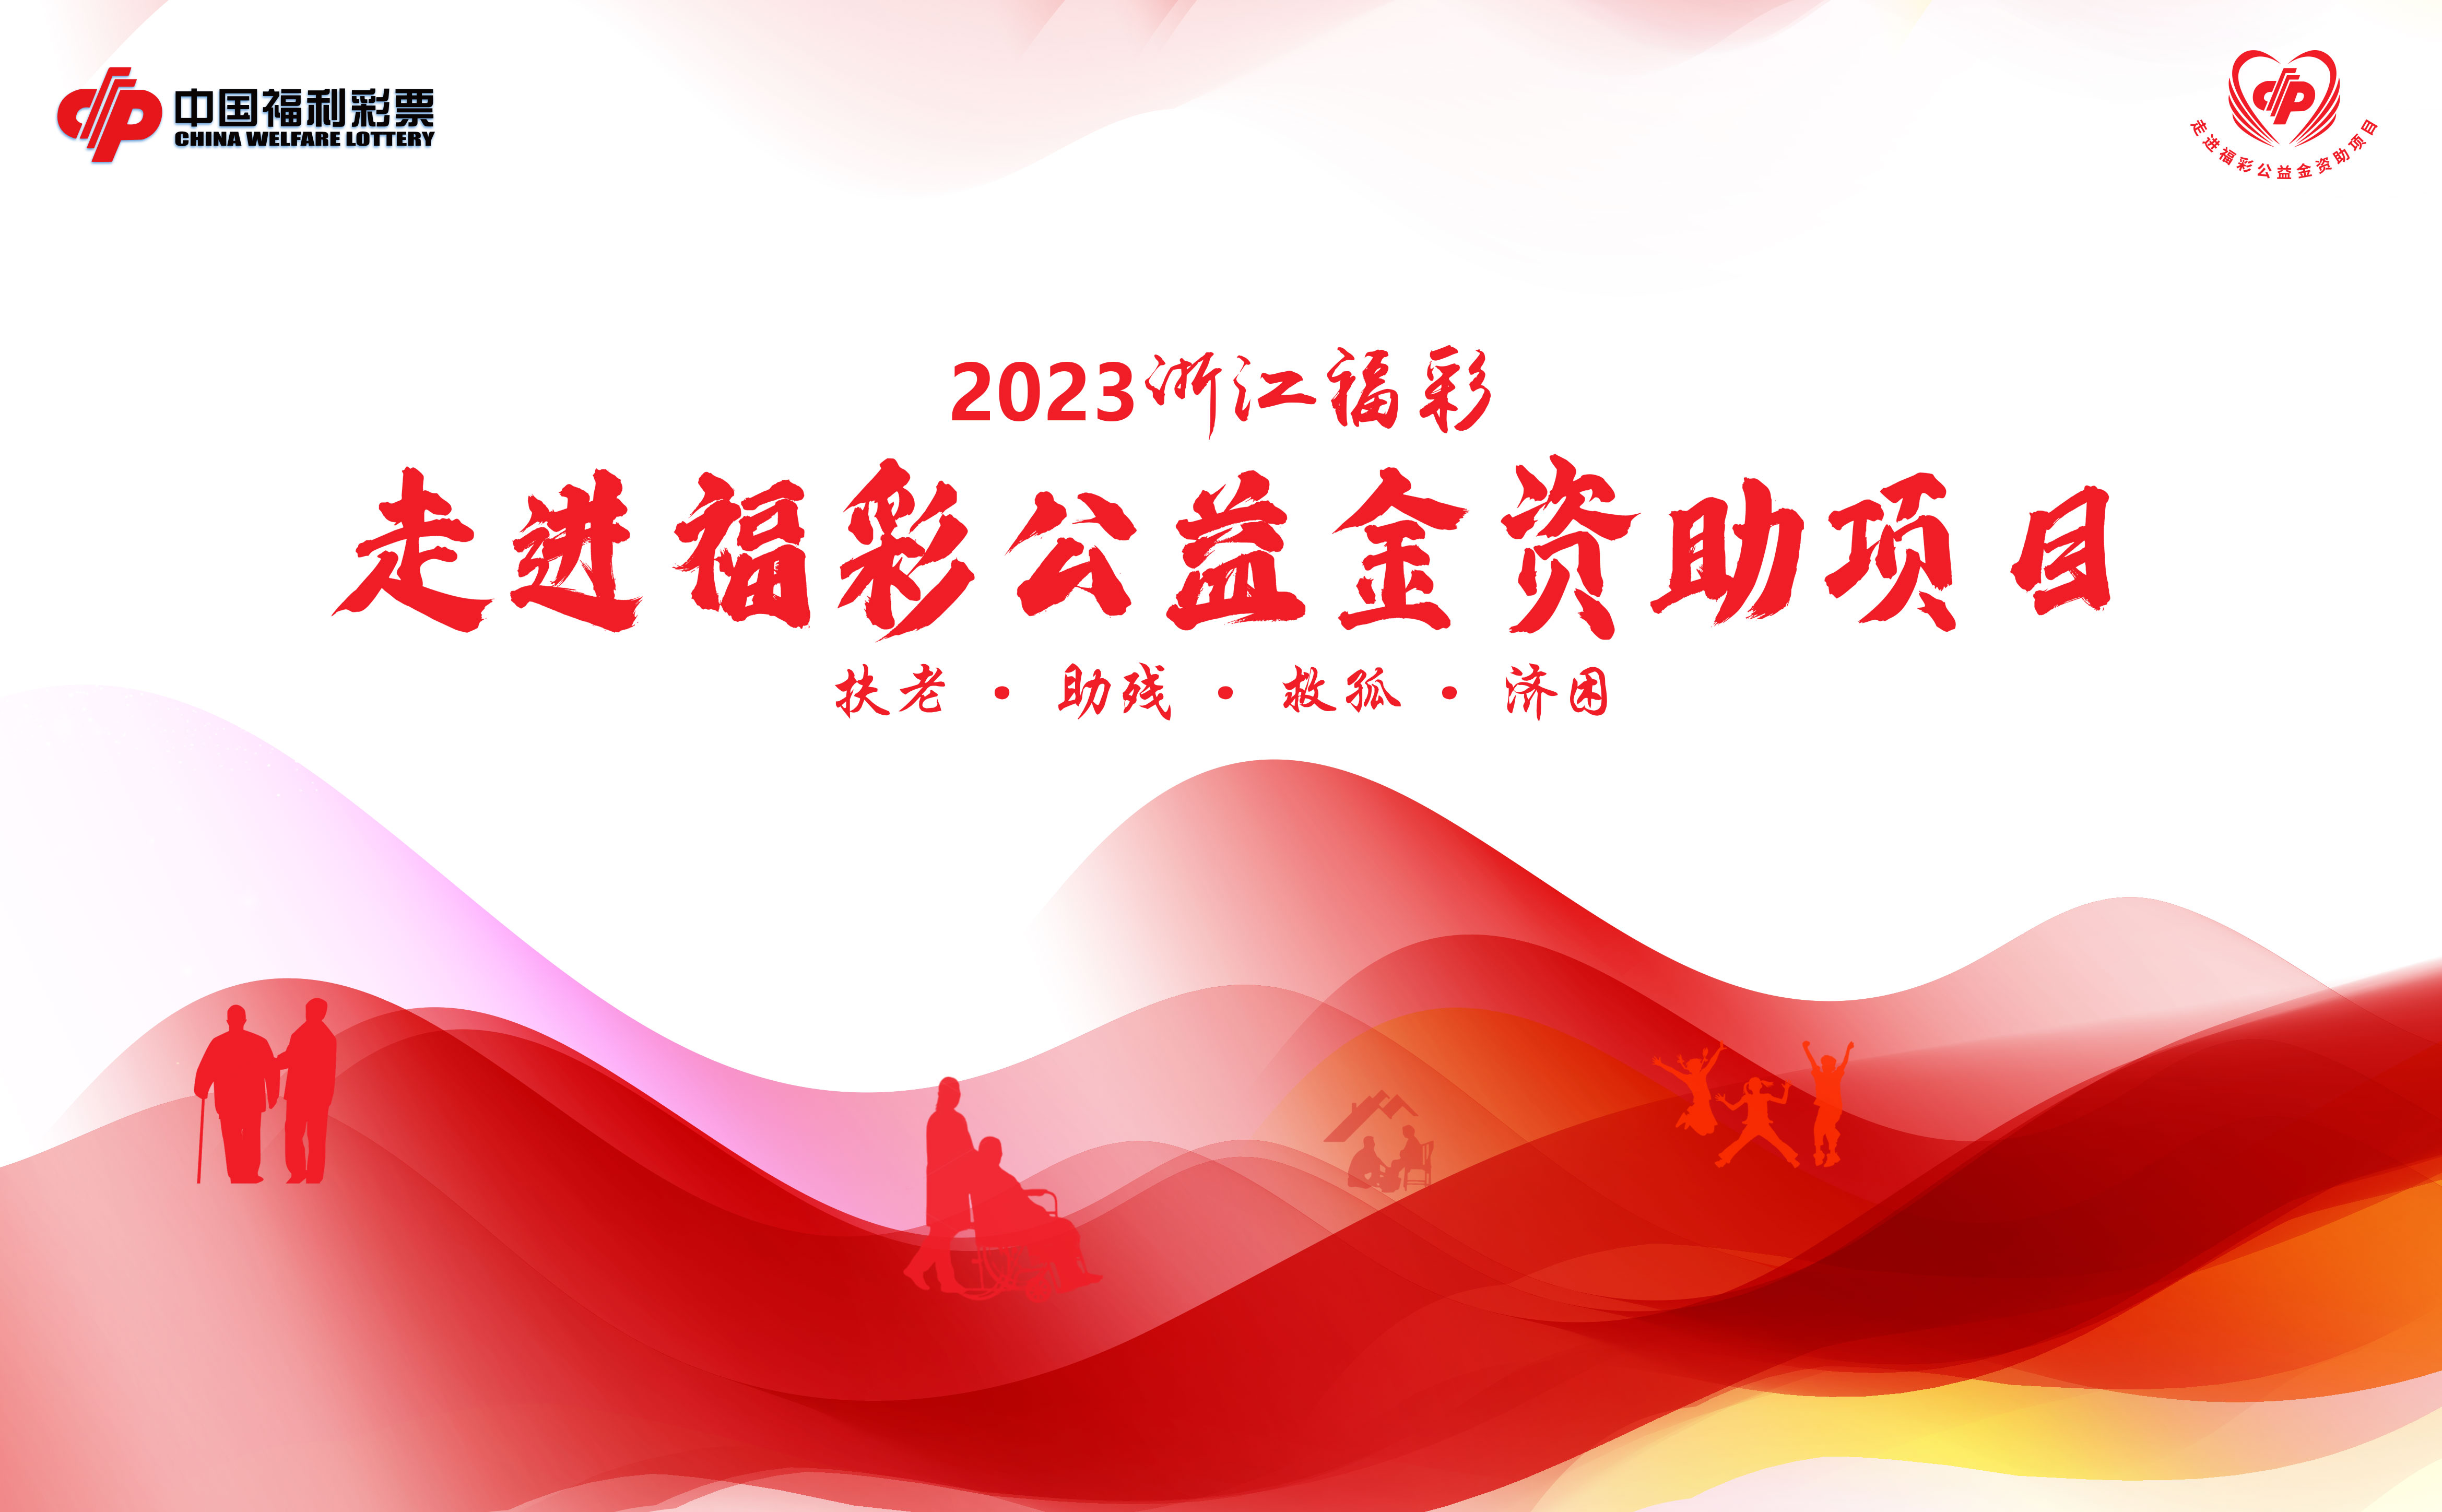 【专题】2023浙江福彩走进福彩公益金资助项目